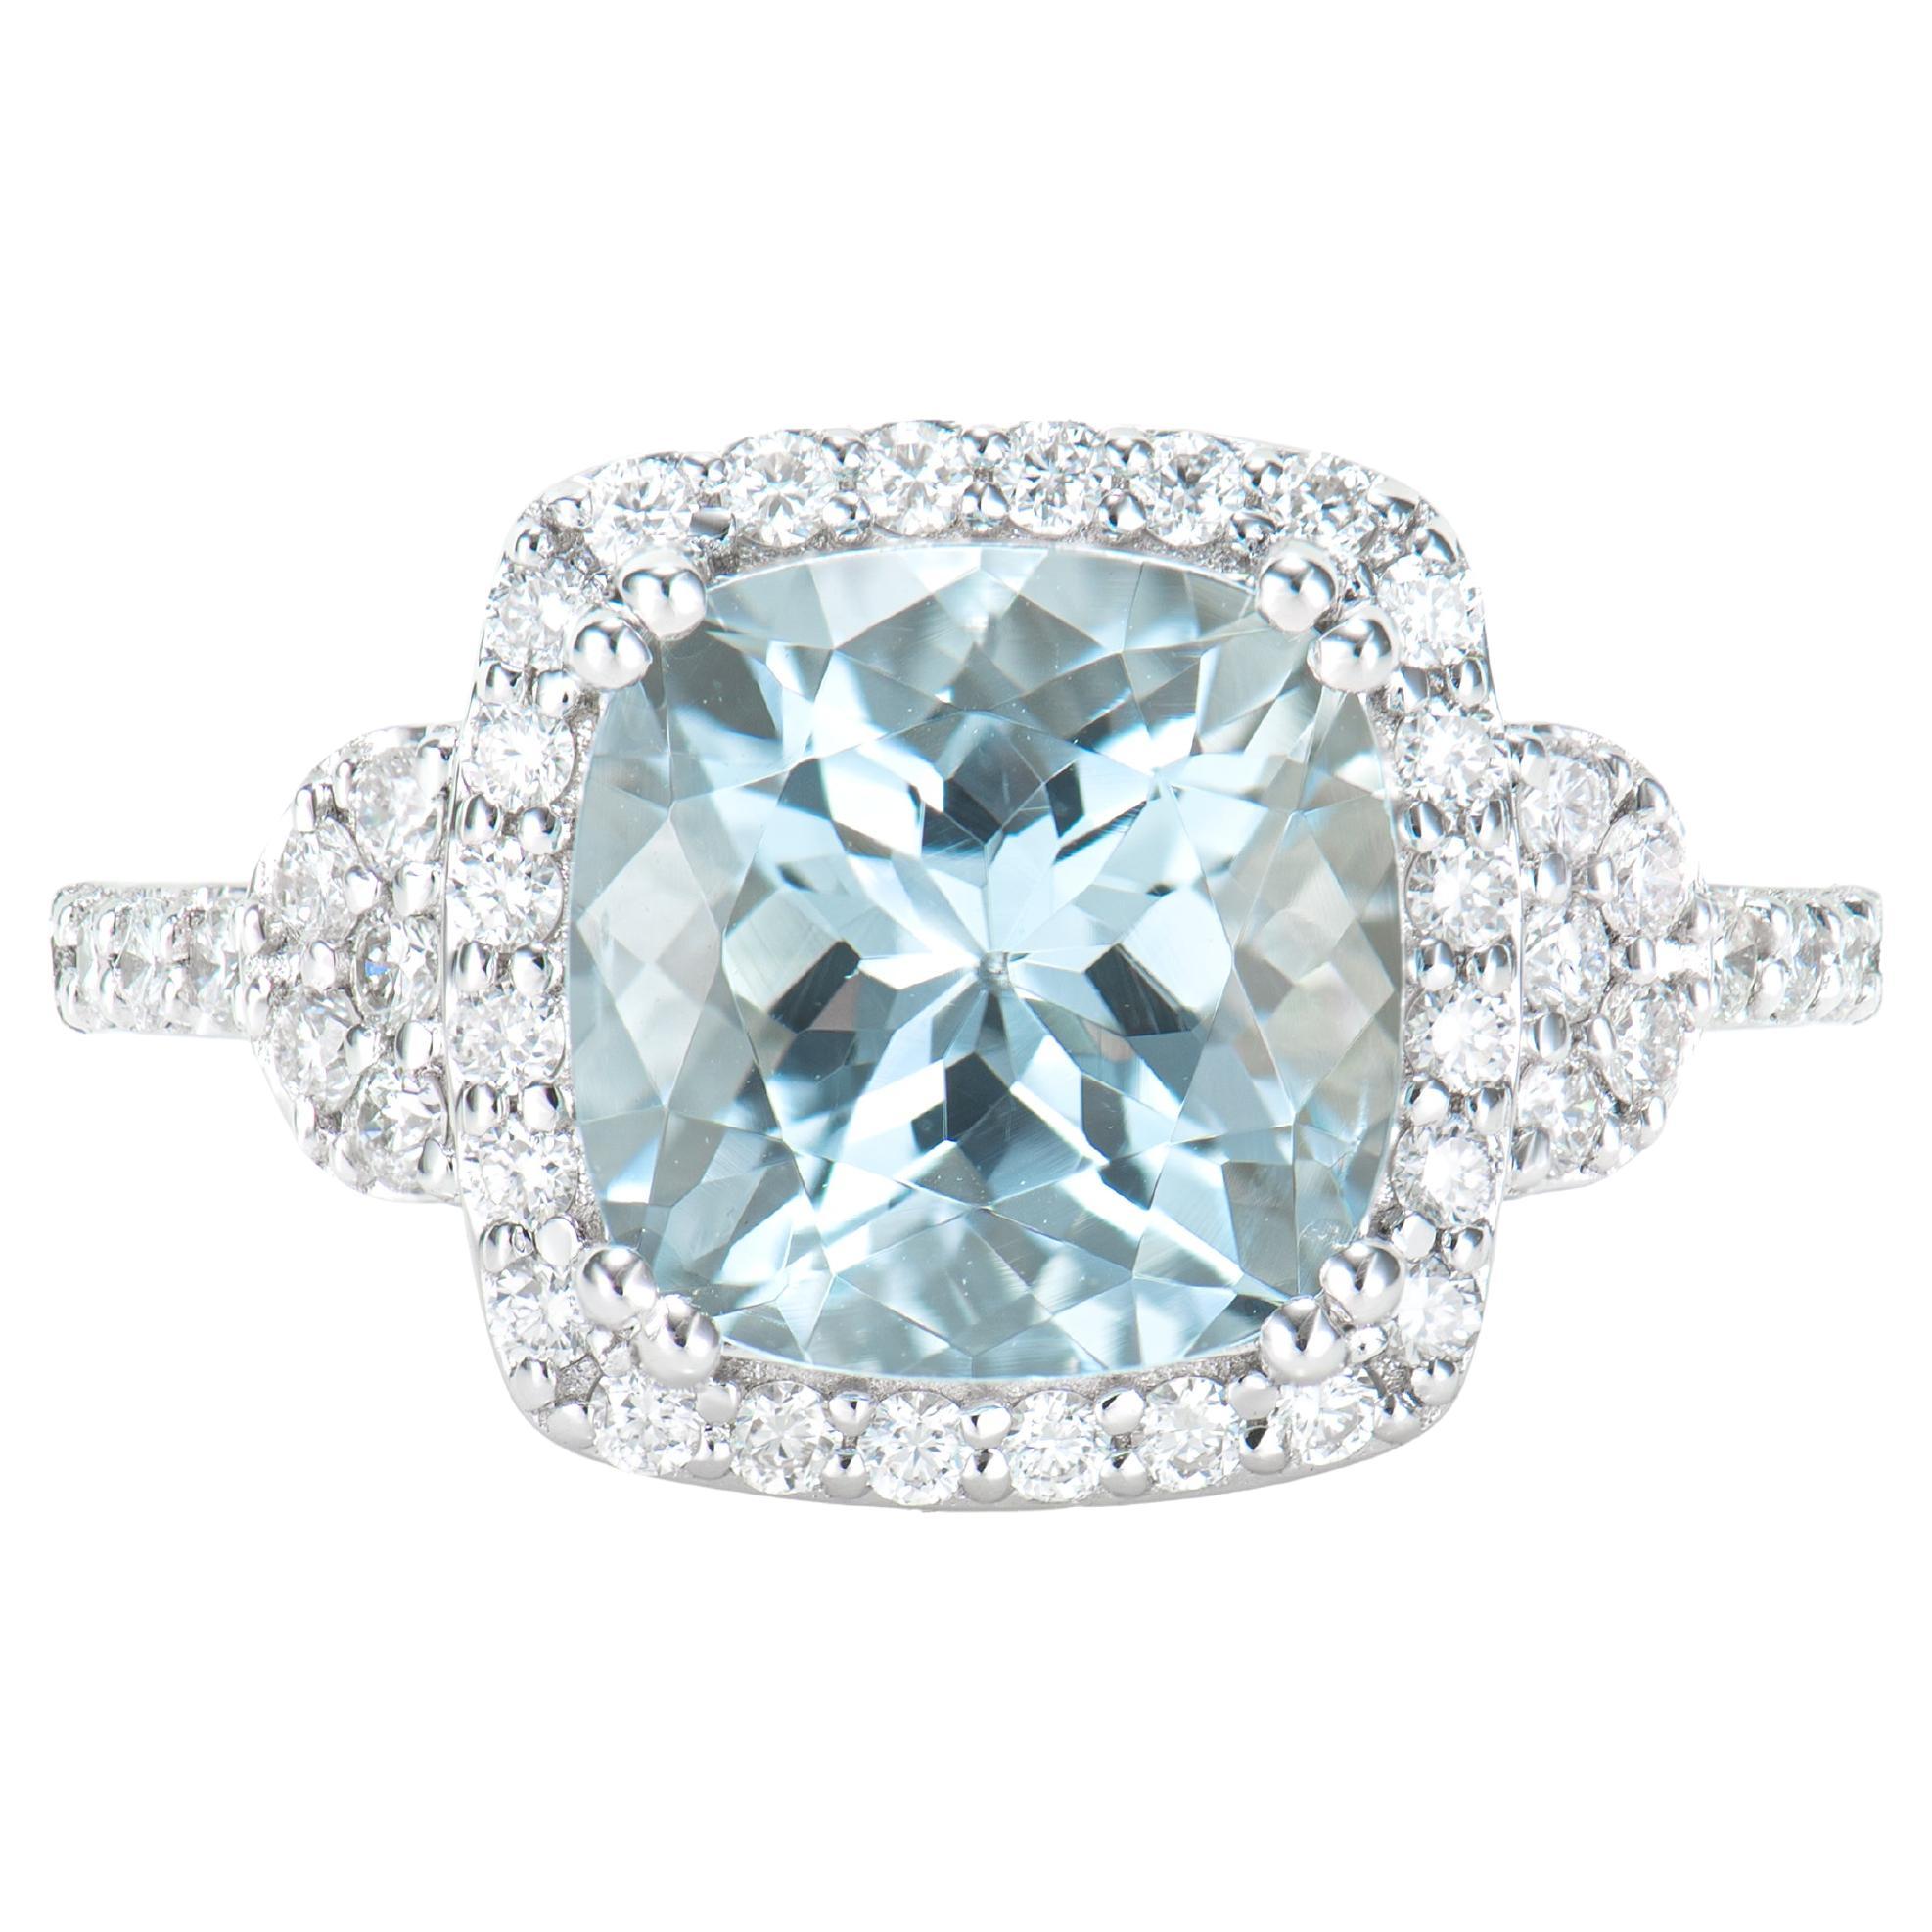 2.96 Carat Aquamarine Elegant Ring in 18 Karat White Gold with White Diamond.